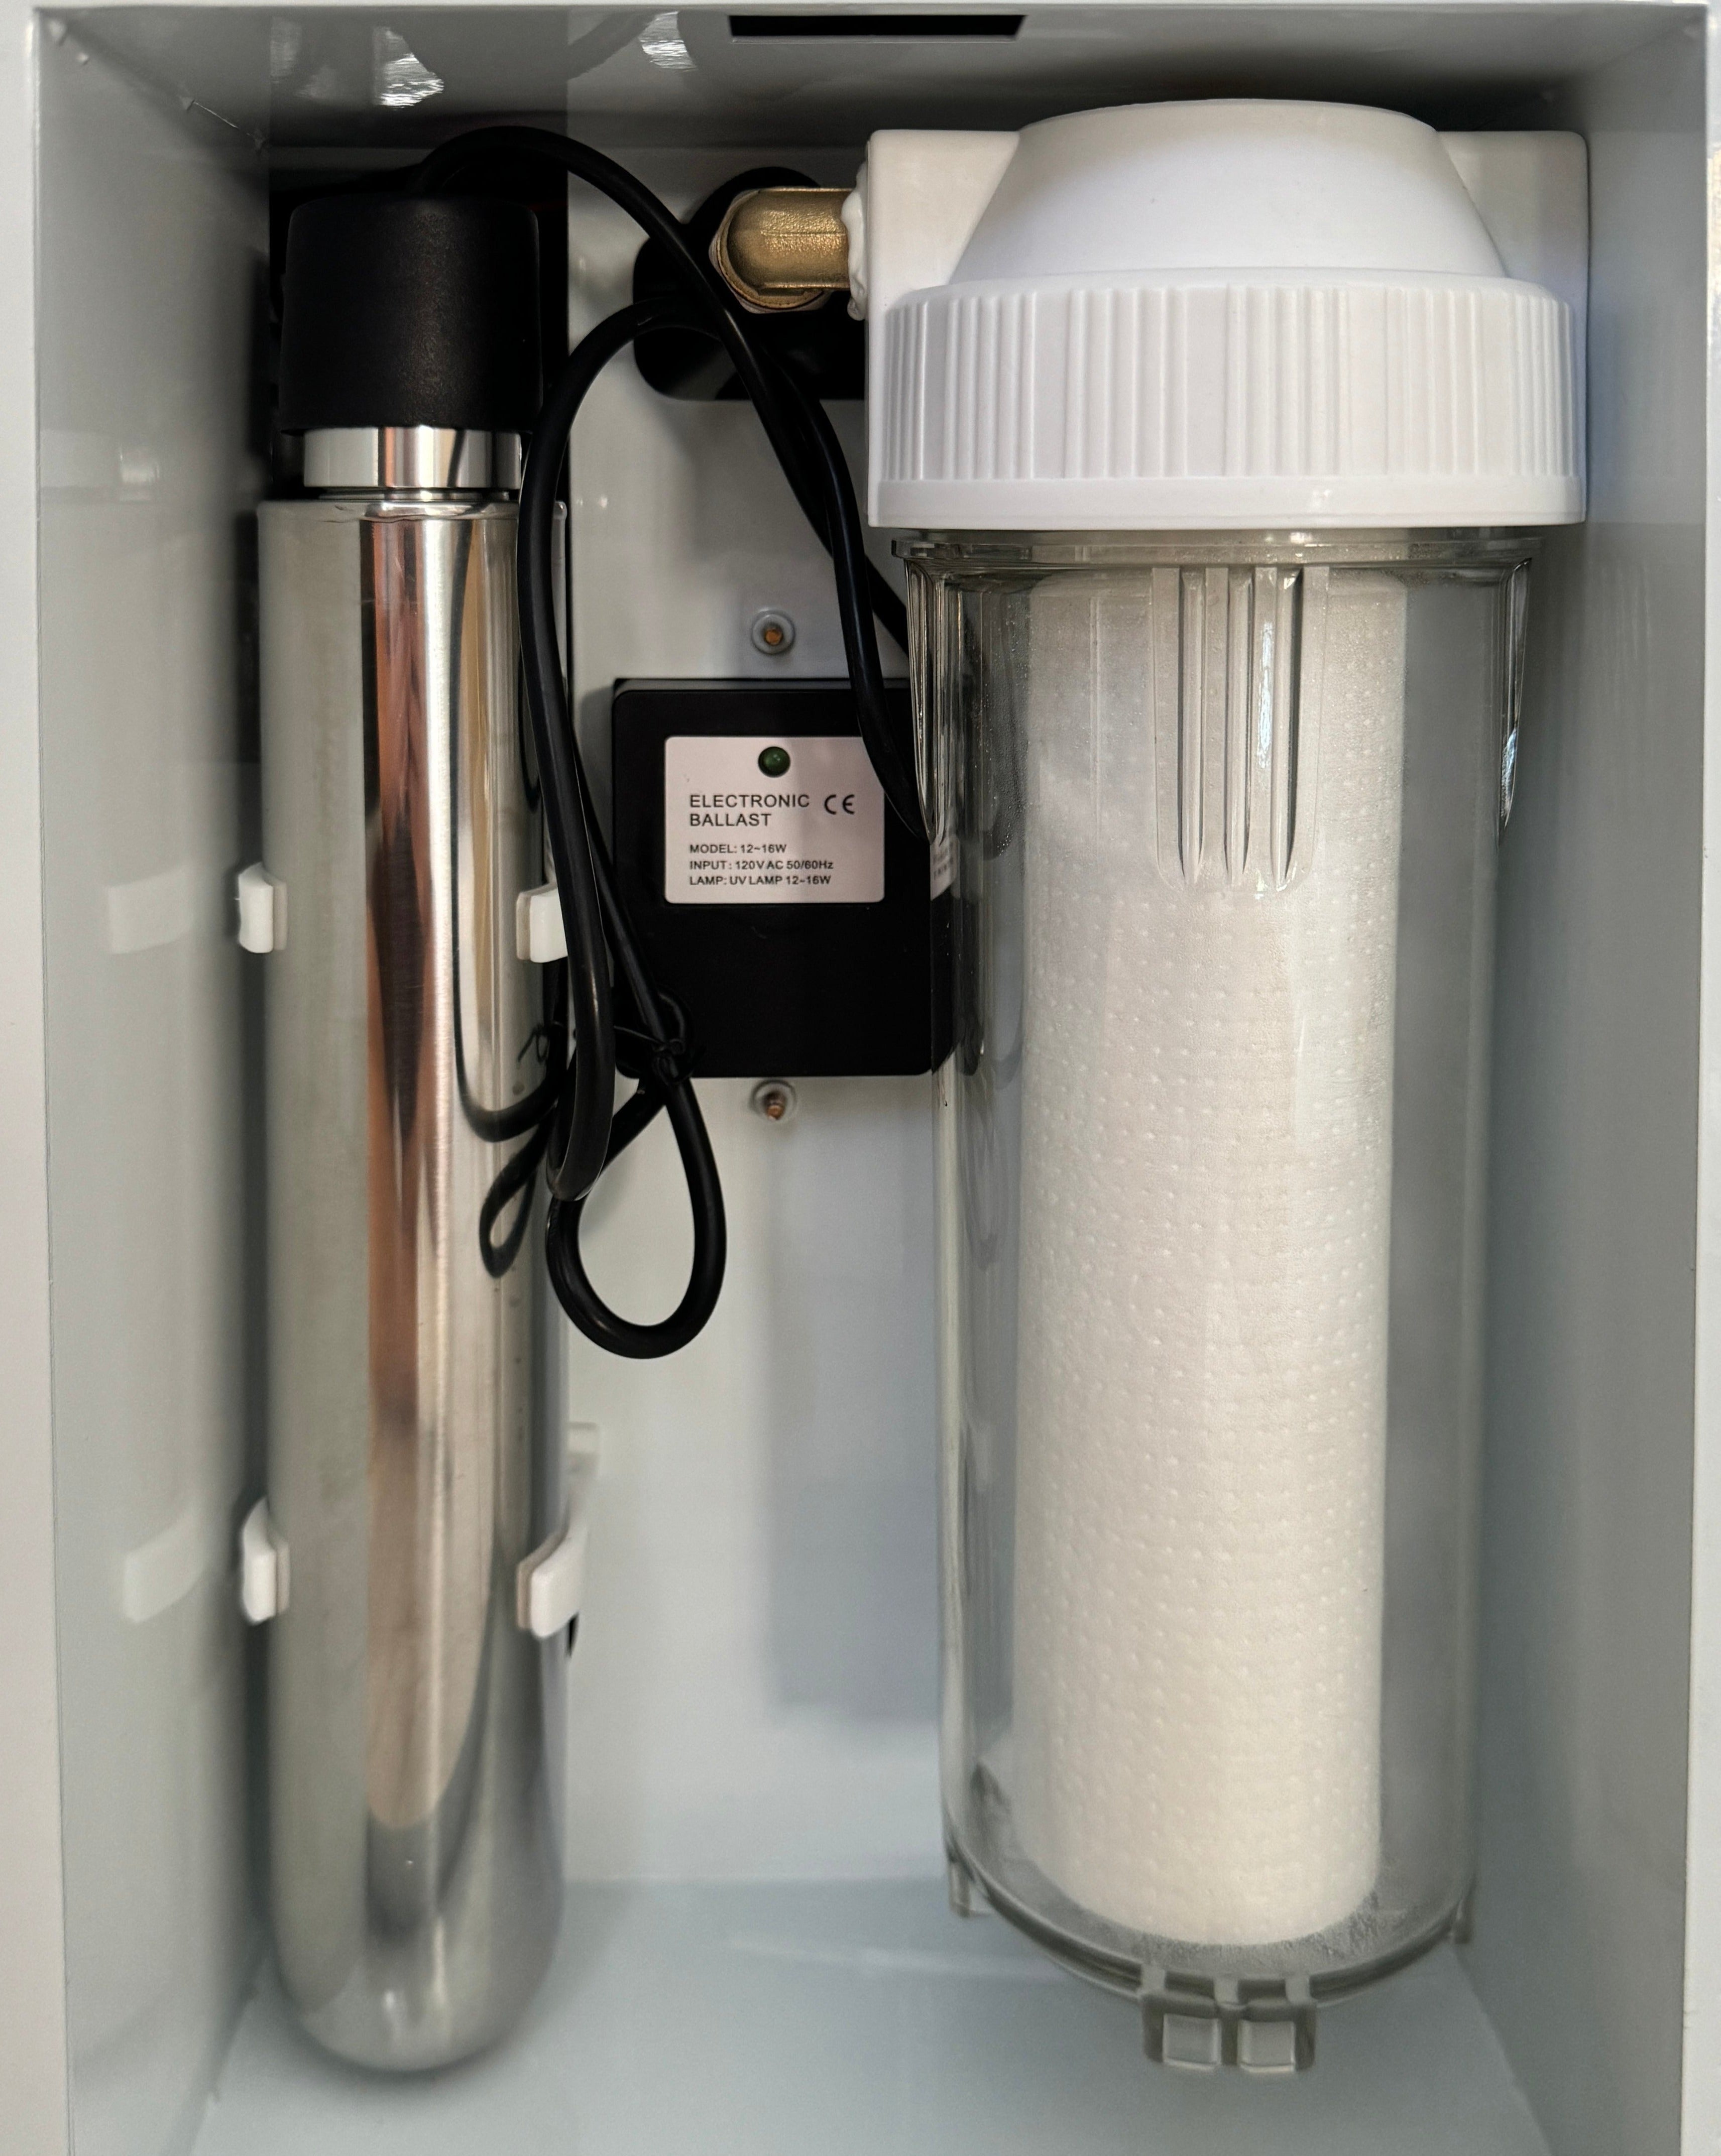 UV light (left) & White Filter for Osone Pro Chiller (right)